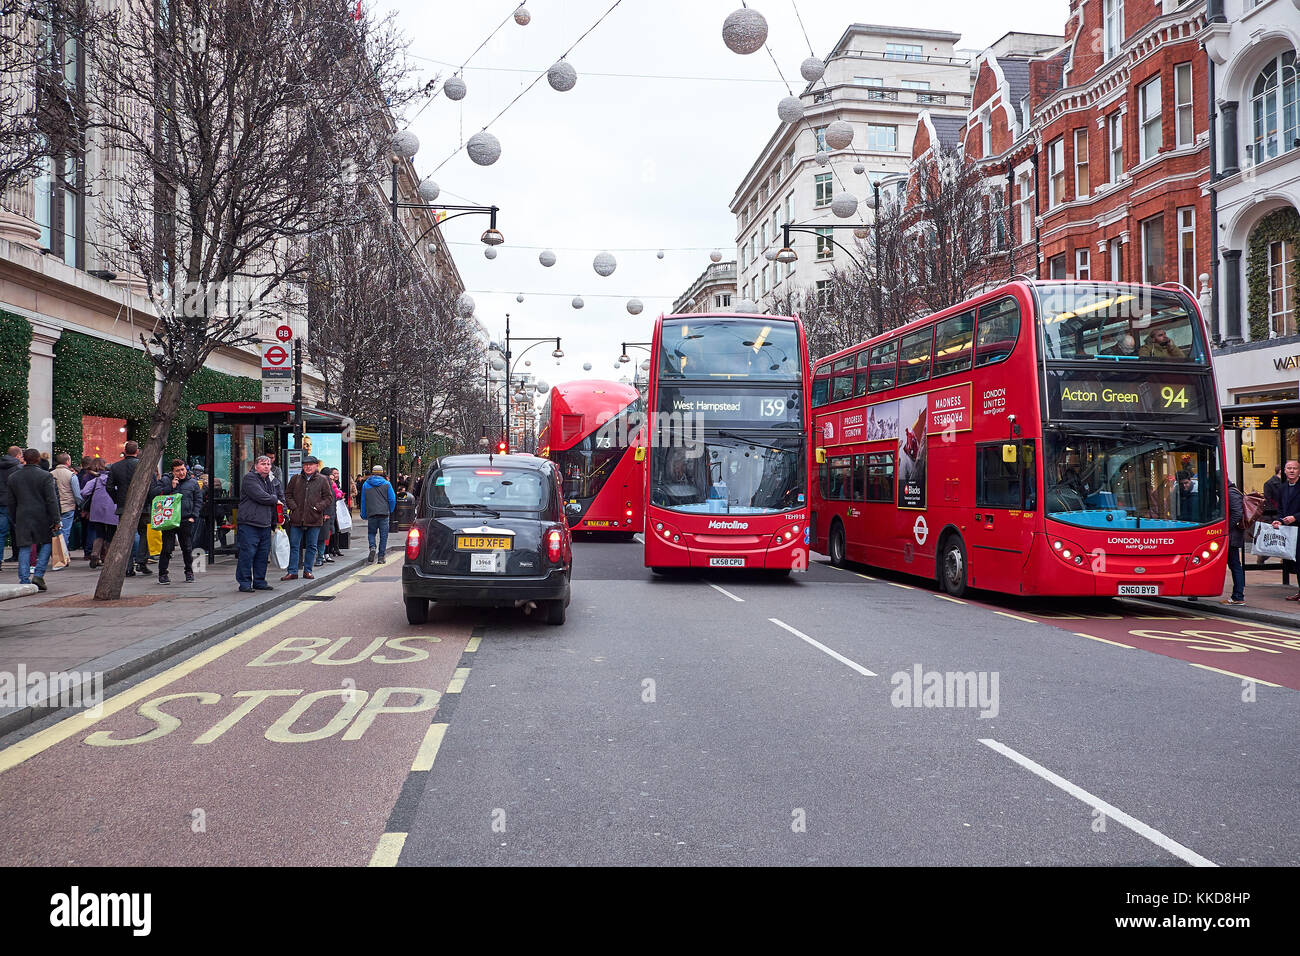 London city - 23 dicembre 2016: strada affollata con red double decker bus e molte persone, in oxford street a tempo di Natale Foto Stock